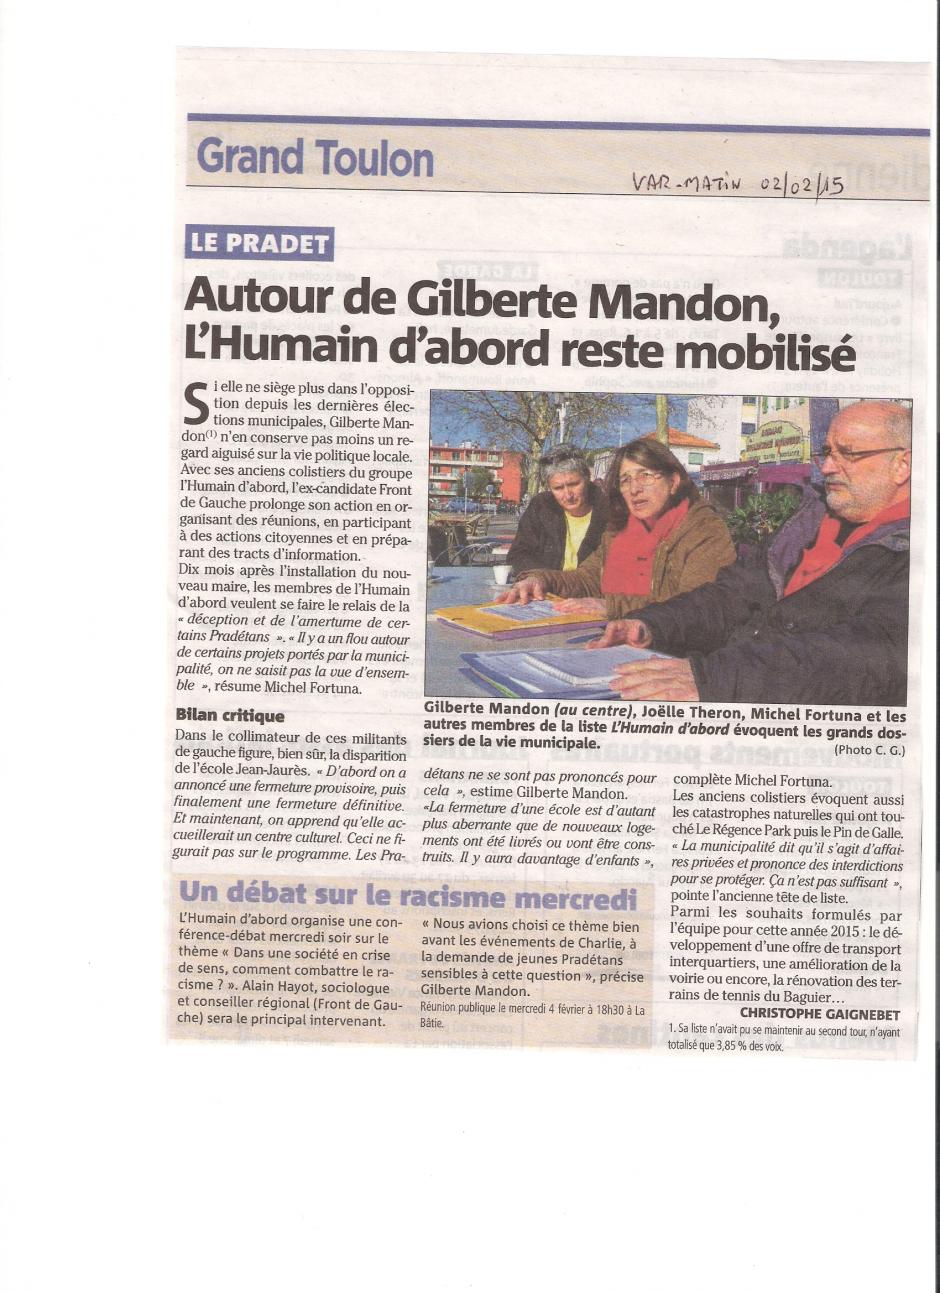 Le Pradet: Autour de Gilberte Mandon, l'Humain d'Abord reste mobilisé ( Var Matin du 02/02)